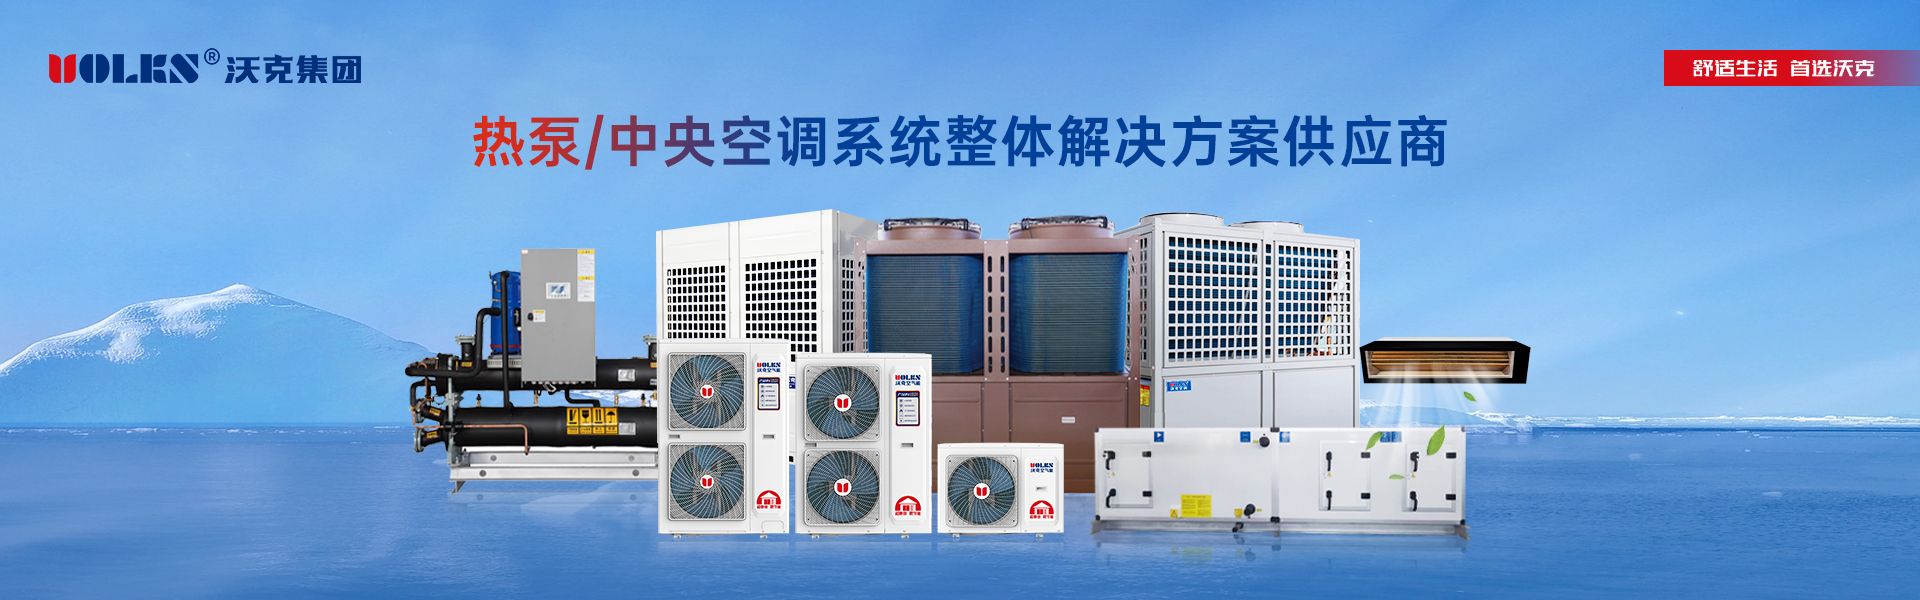 熱泵/中央空調全品類超級生產基地.jpg